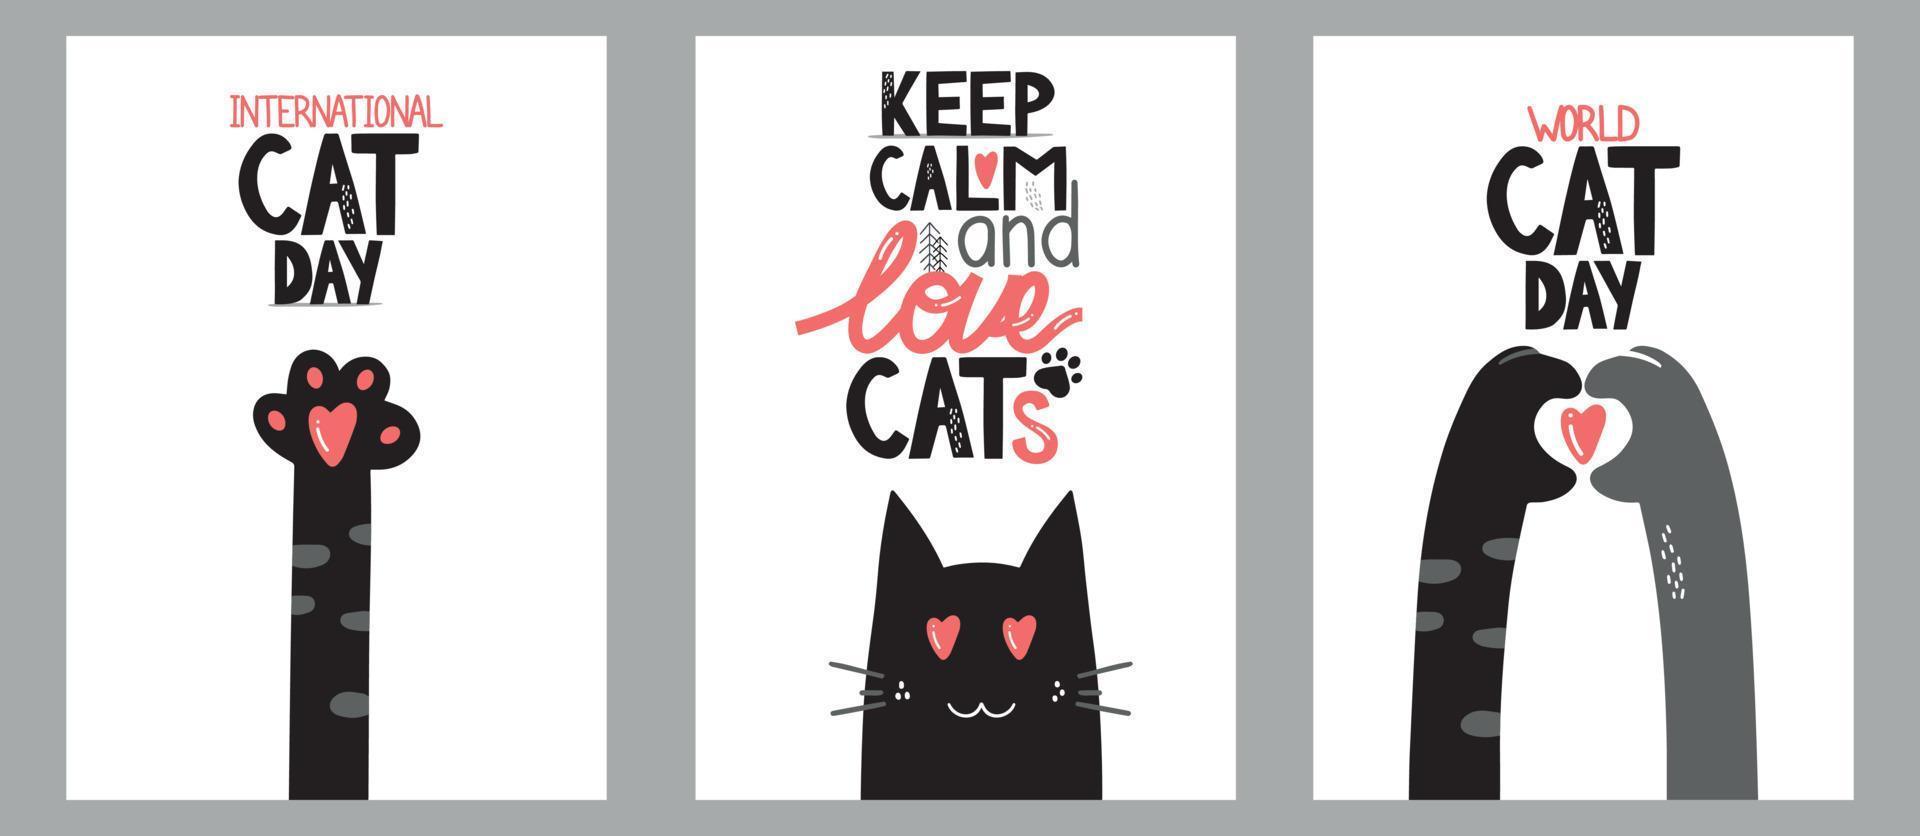 cartões postais para o dia internacional do gato em 8 de agosto. gato engraçado dos desenhos animados. animais felizes imprimem em cartão de felicitações, pôster, panfleto vetor